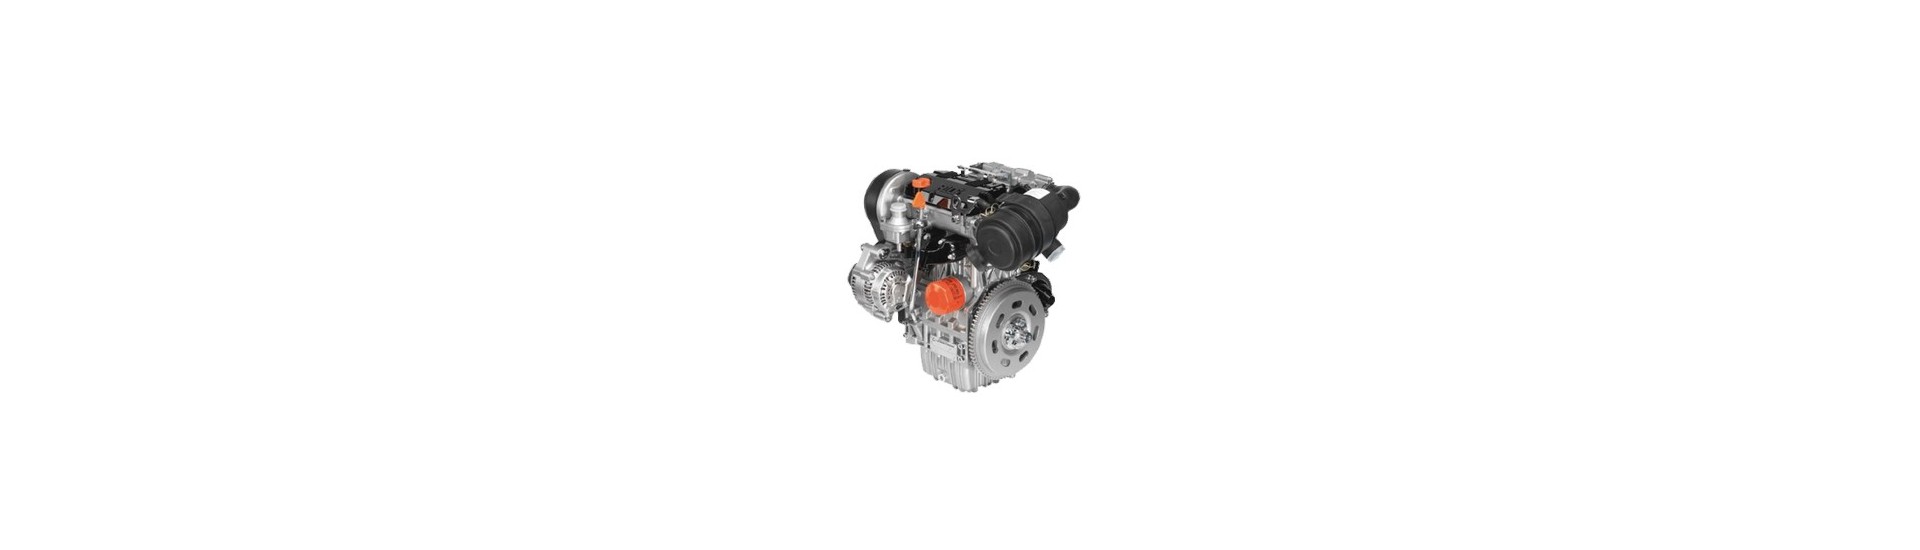 Piezas de motor usadas al mejor precio para motor Lombardini essence 523 MPI